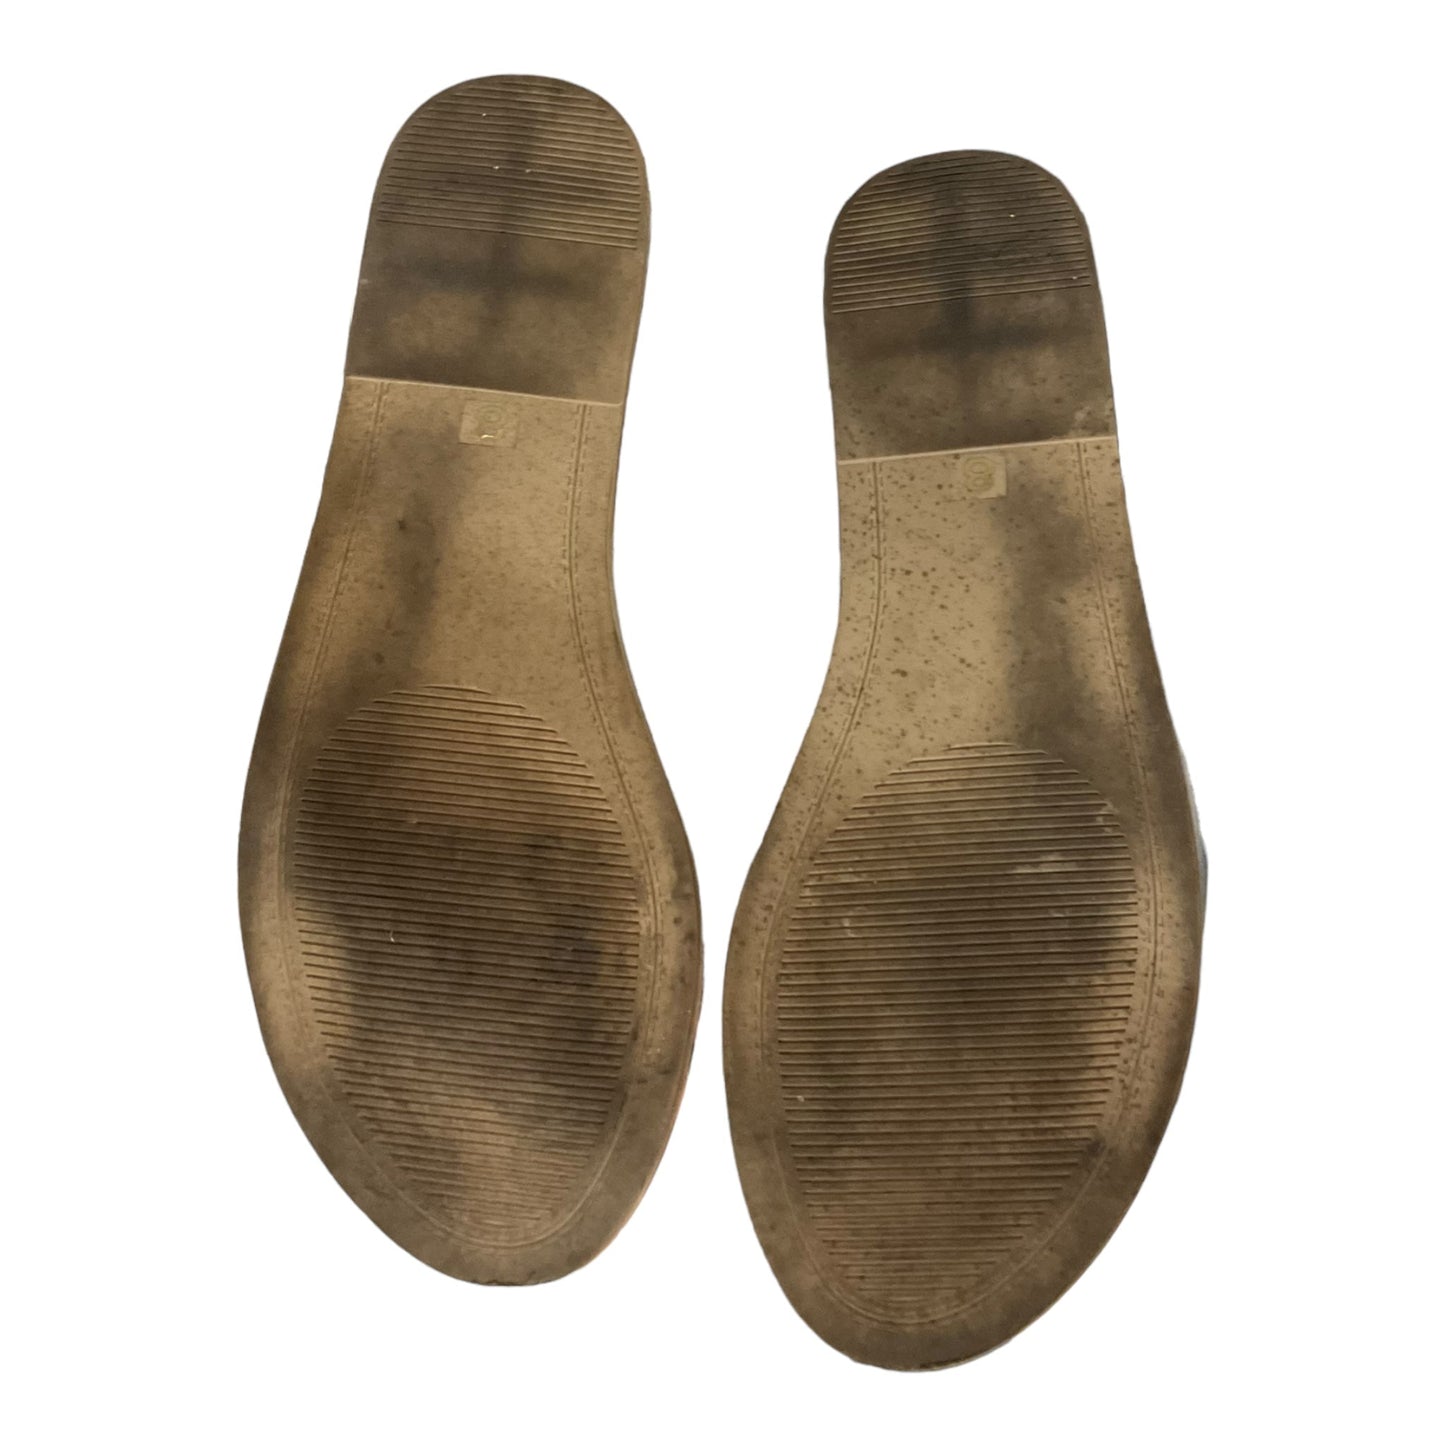 Silver Sandals Flats Steve Madden, Size 8